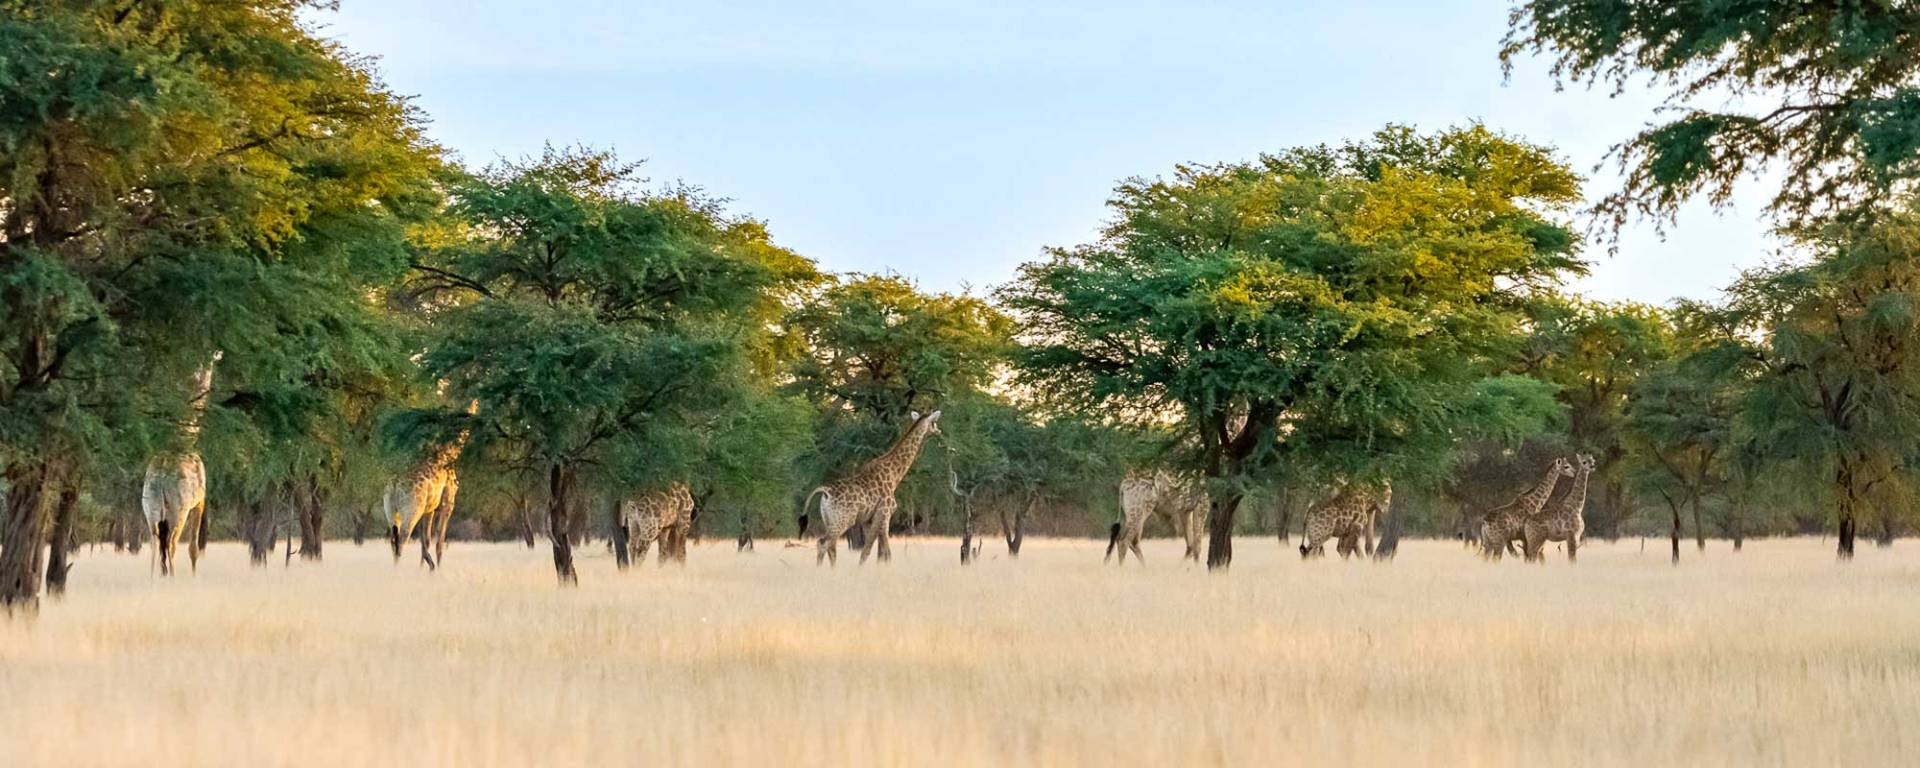 Giraffen im Kameldornwald